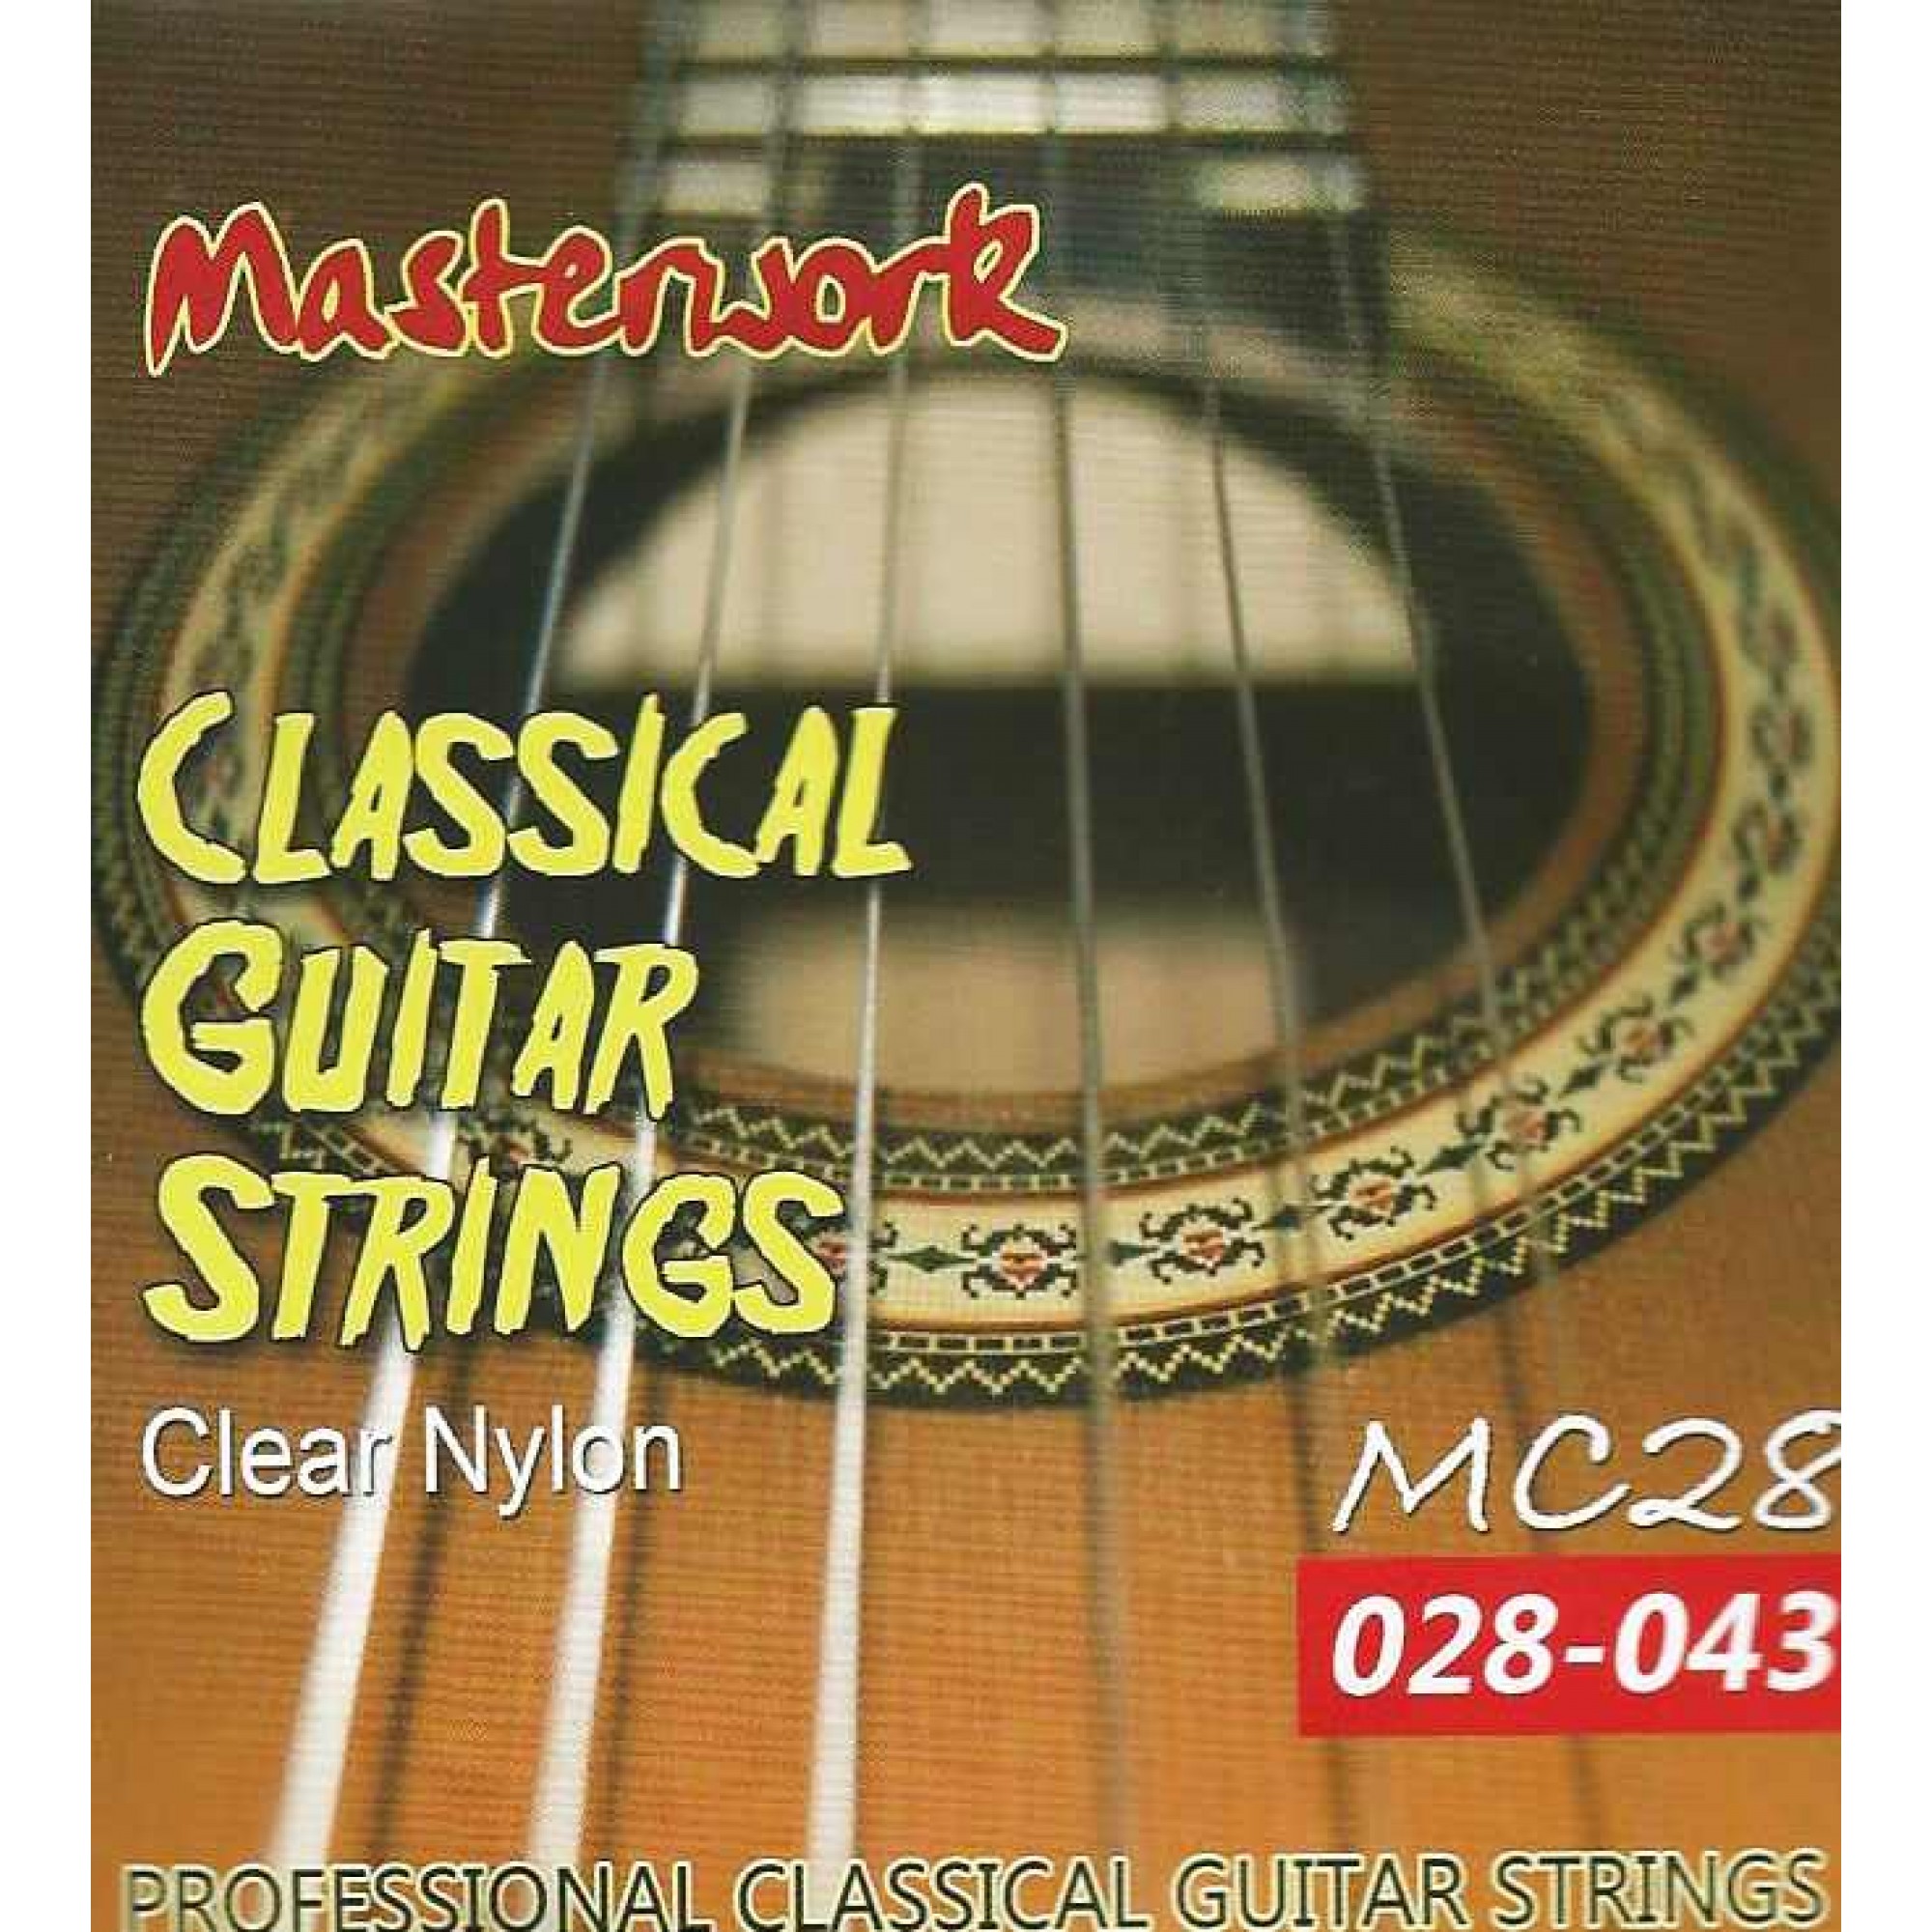 سیم گیتار کلاسیک مسترورک مدل MC28